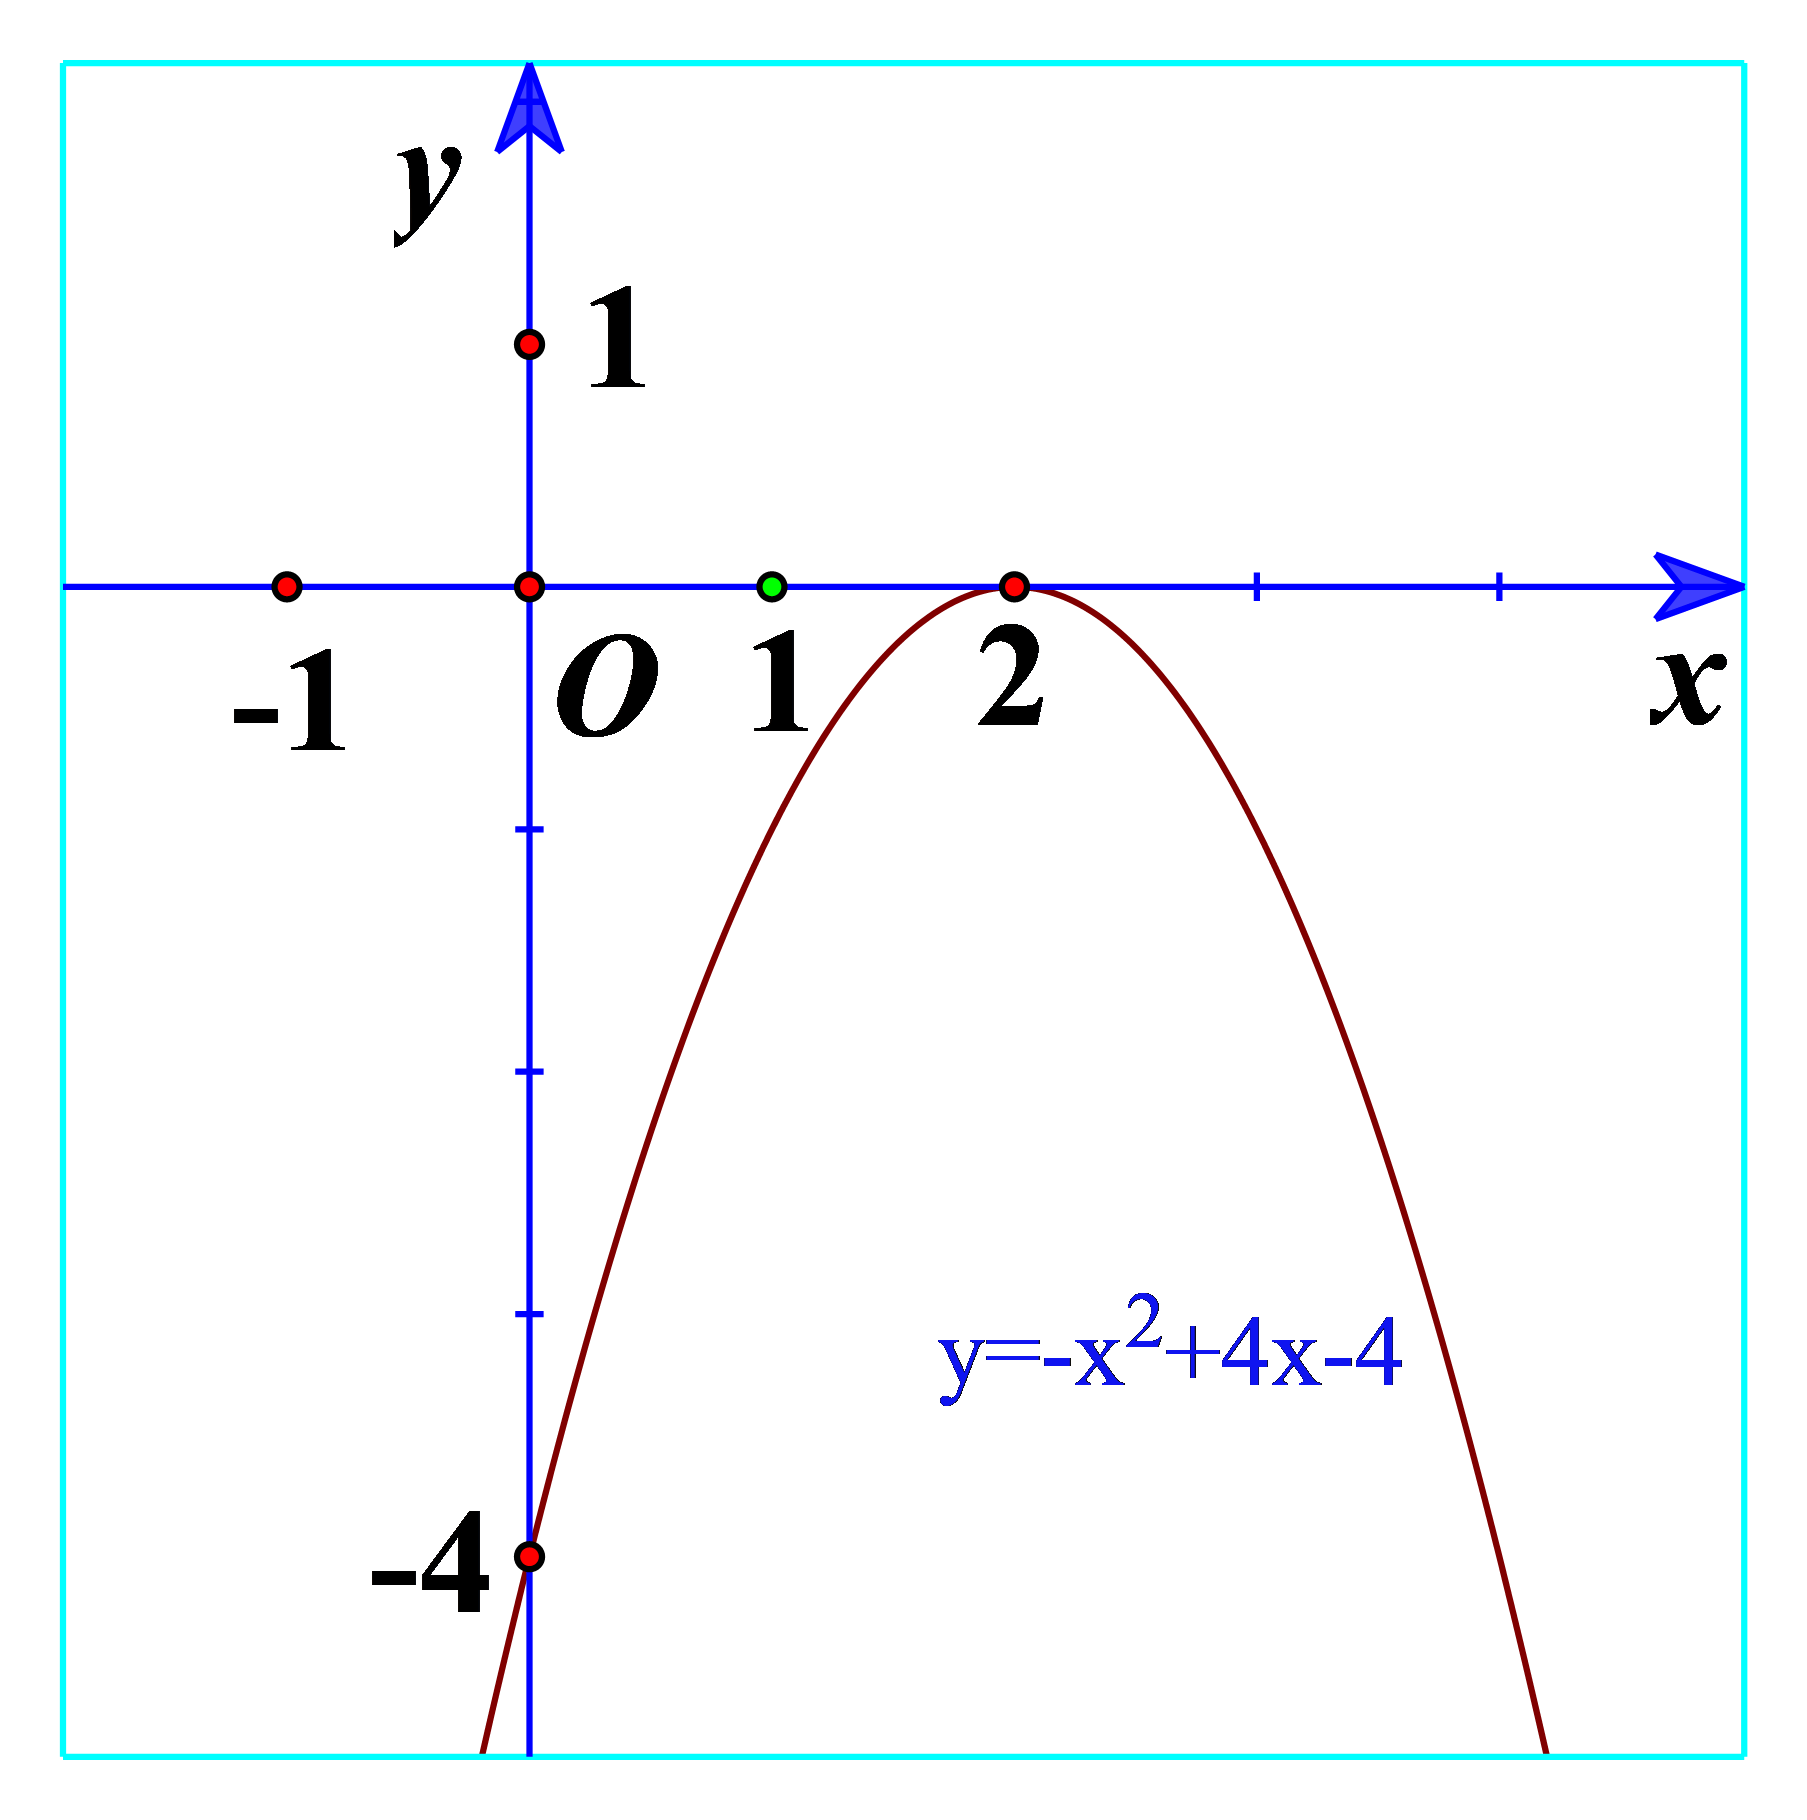 Tam thức bậc hai là một phương pháp cơ bản để giải quyết các bài toán toán học liên quan đến đường cong Parabol. Việc hiểu rõ về dấu của tam thức bậc hai có thể giúp bạn giải quyết các bài toán phức tạp một cách dễ dàng và chính xác. Hãy xem hình về dấu của tam thức bậc hai để trau dồi kỹ năng toán học của bạn.